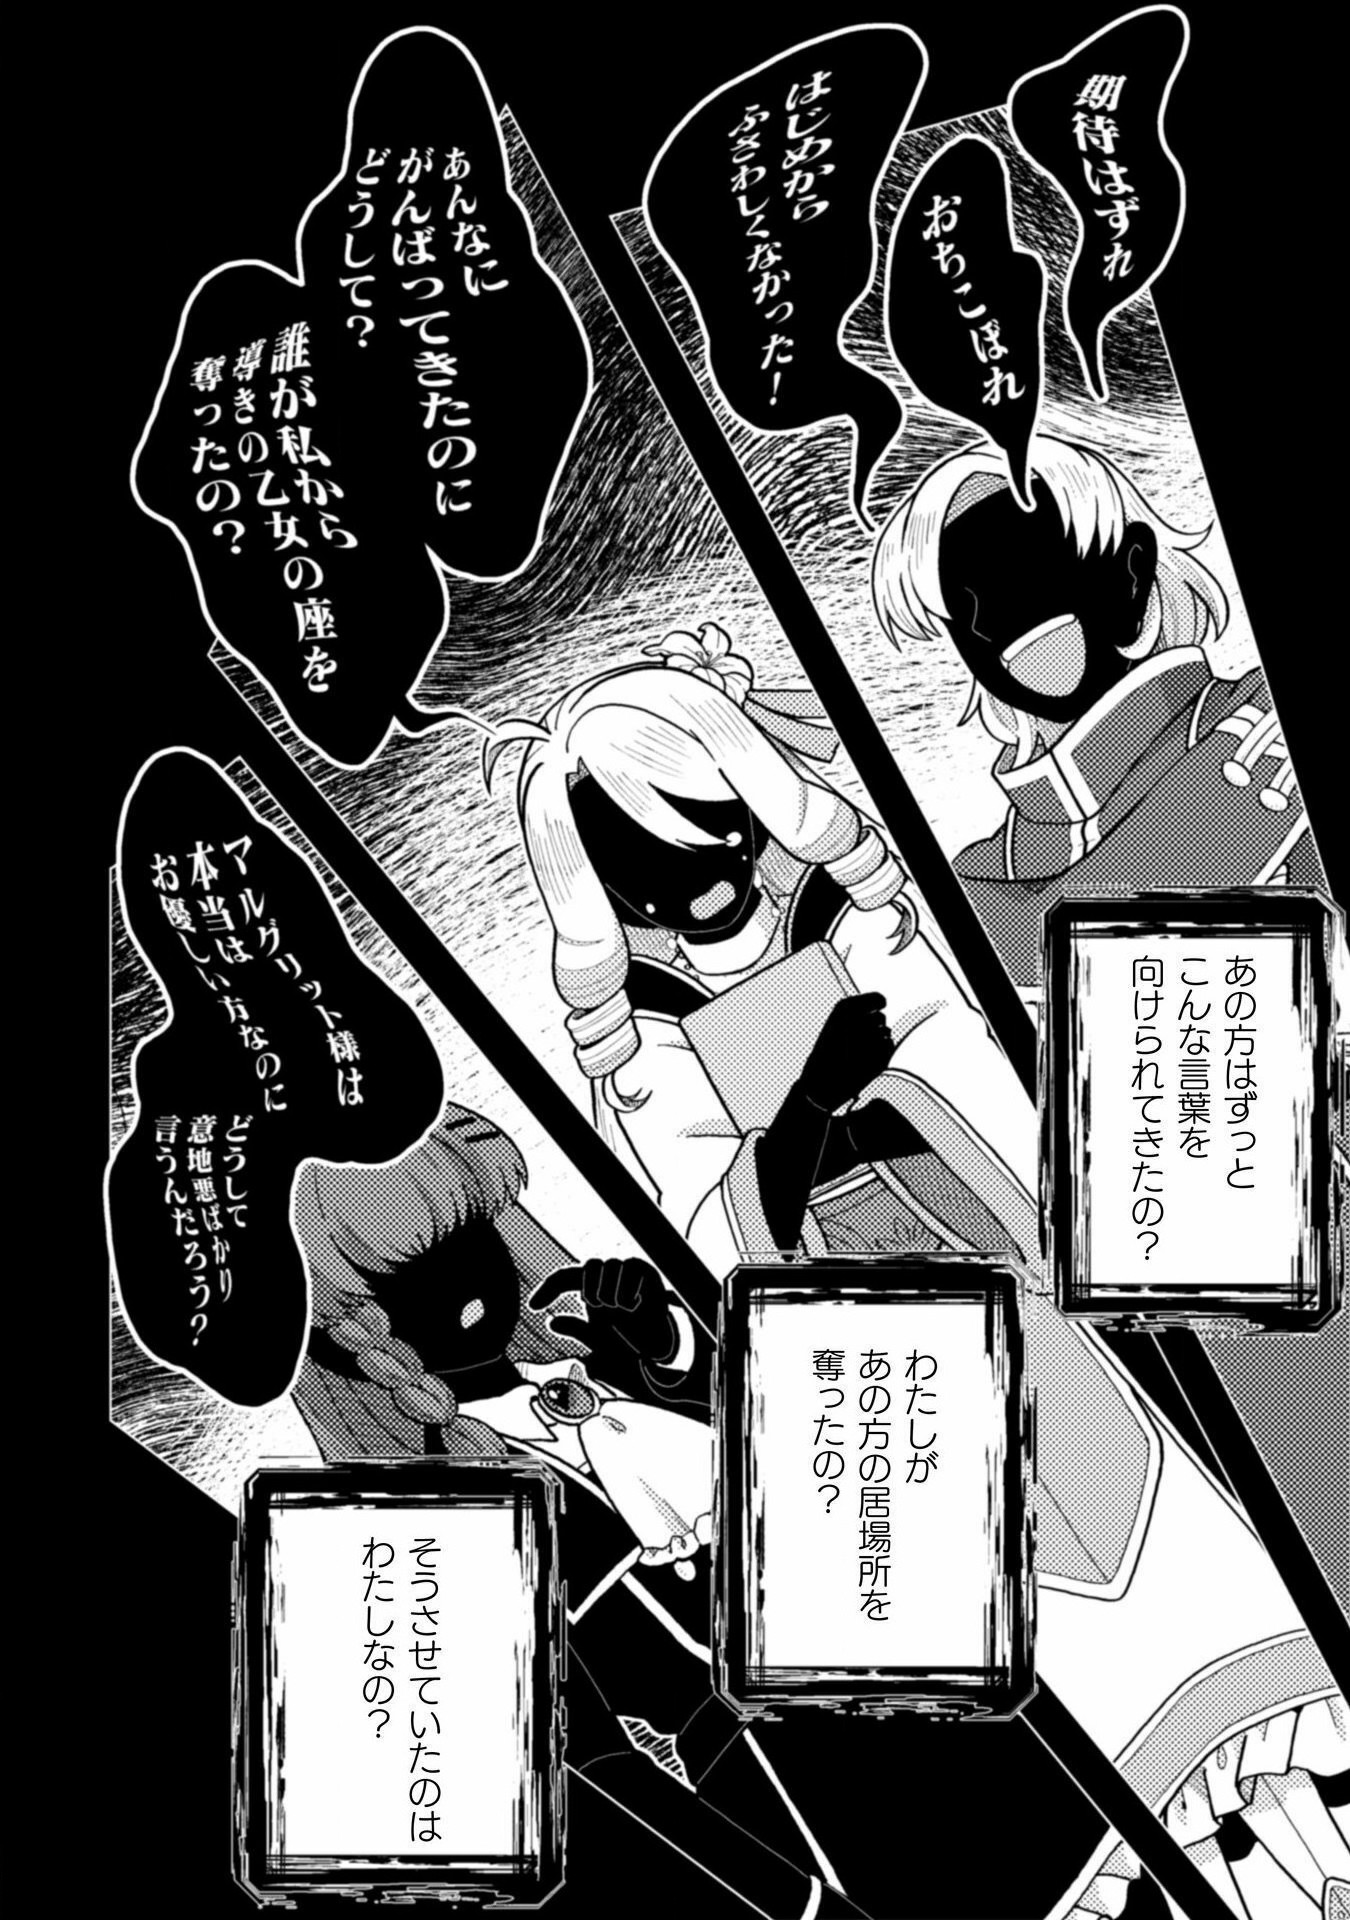 Otome Game no Akuyaku Reijou ni Tensei shitakedo Follower ga Fukyoushiteta Chisiki shikanai - Chapter 21 - Page 28